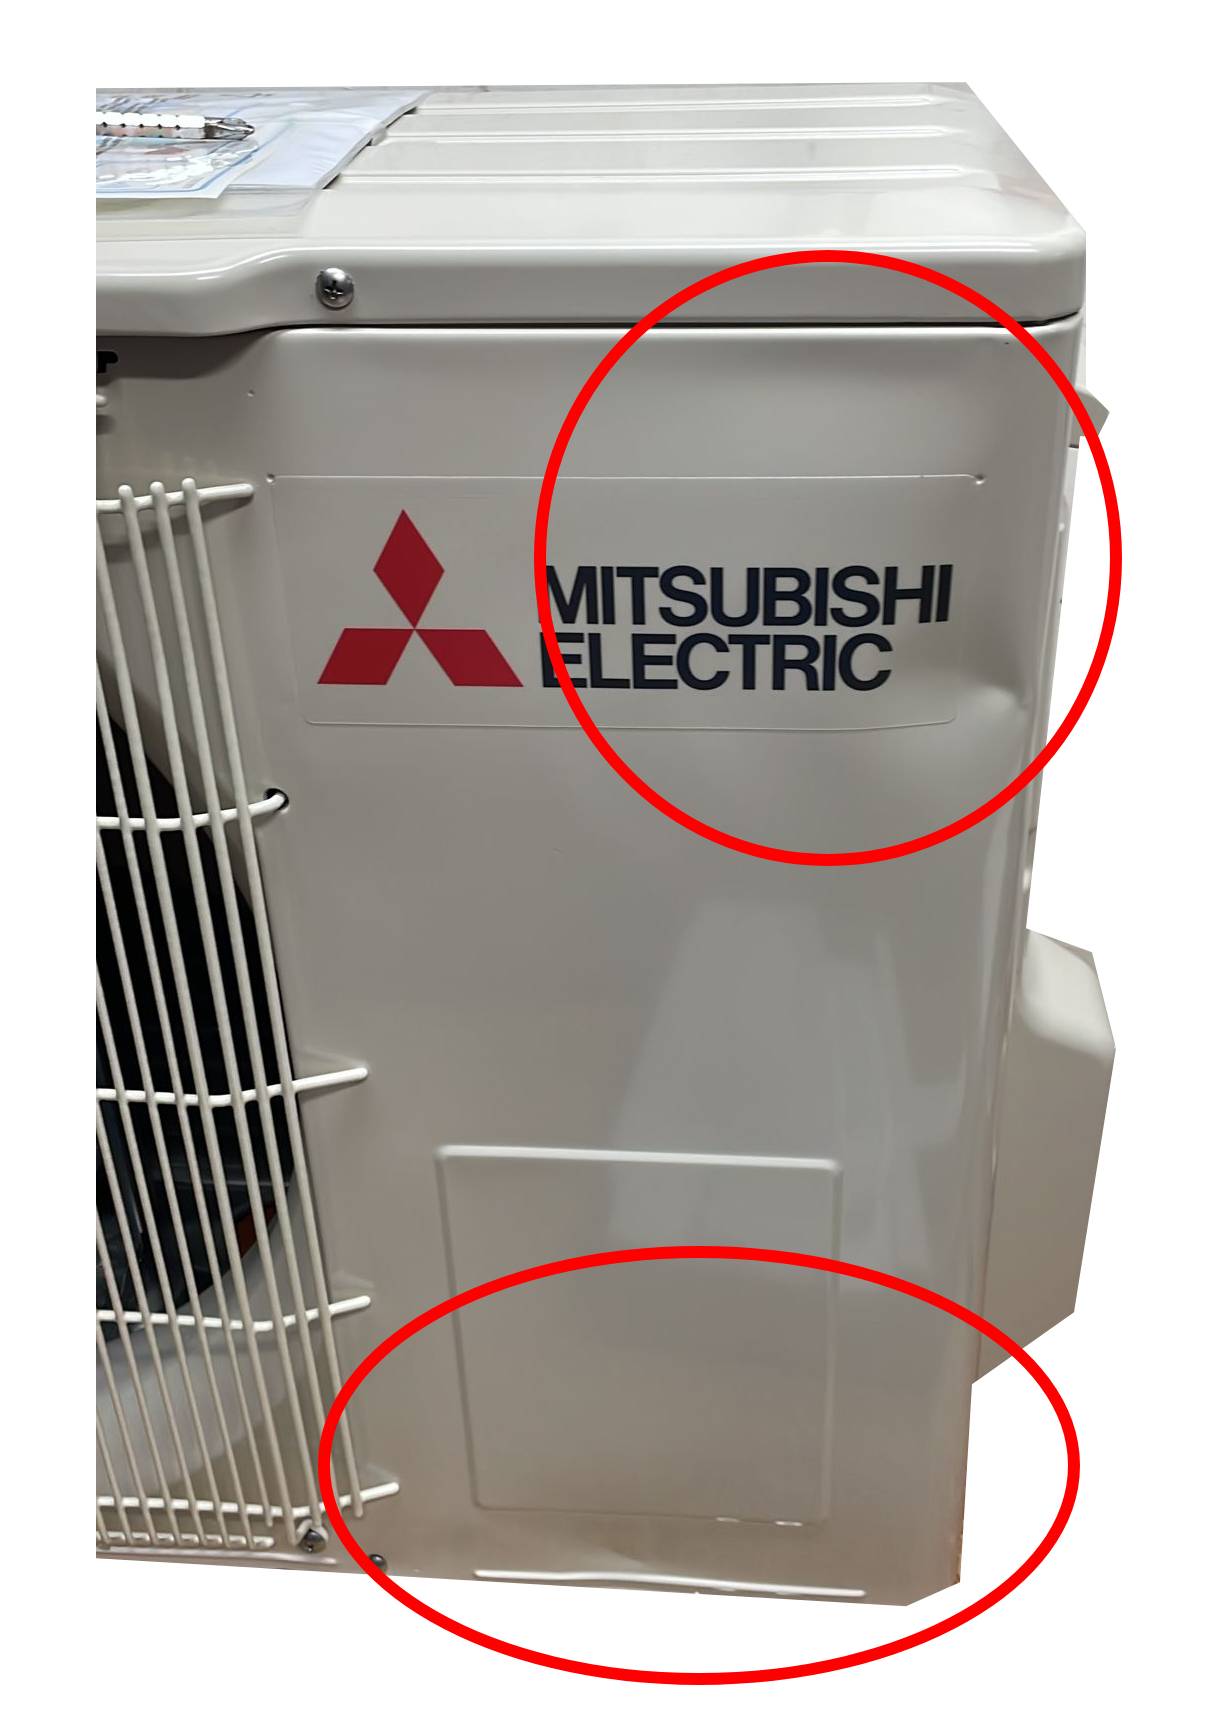 immagine-3-mitsubishi-electric-area-occasioni-climatizzatore-condizionatore-mitsubishi-electric-inverter-serie-smart-msz-hr-9000-btu-msz-hr25vf-r-32-wi-fi-optional-classe-aa-ao1049